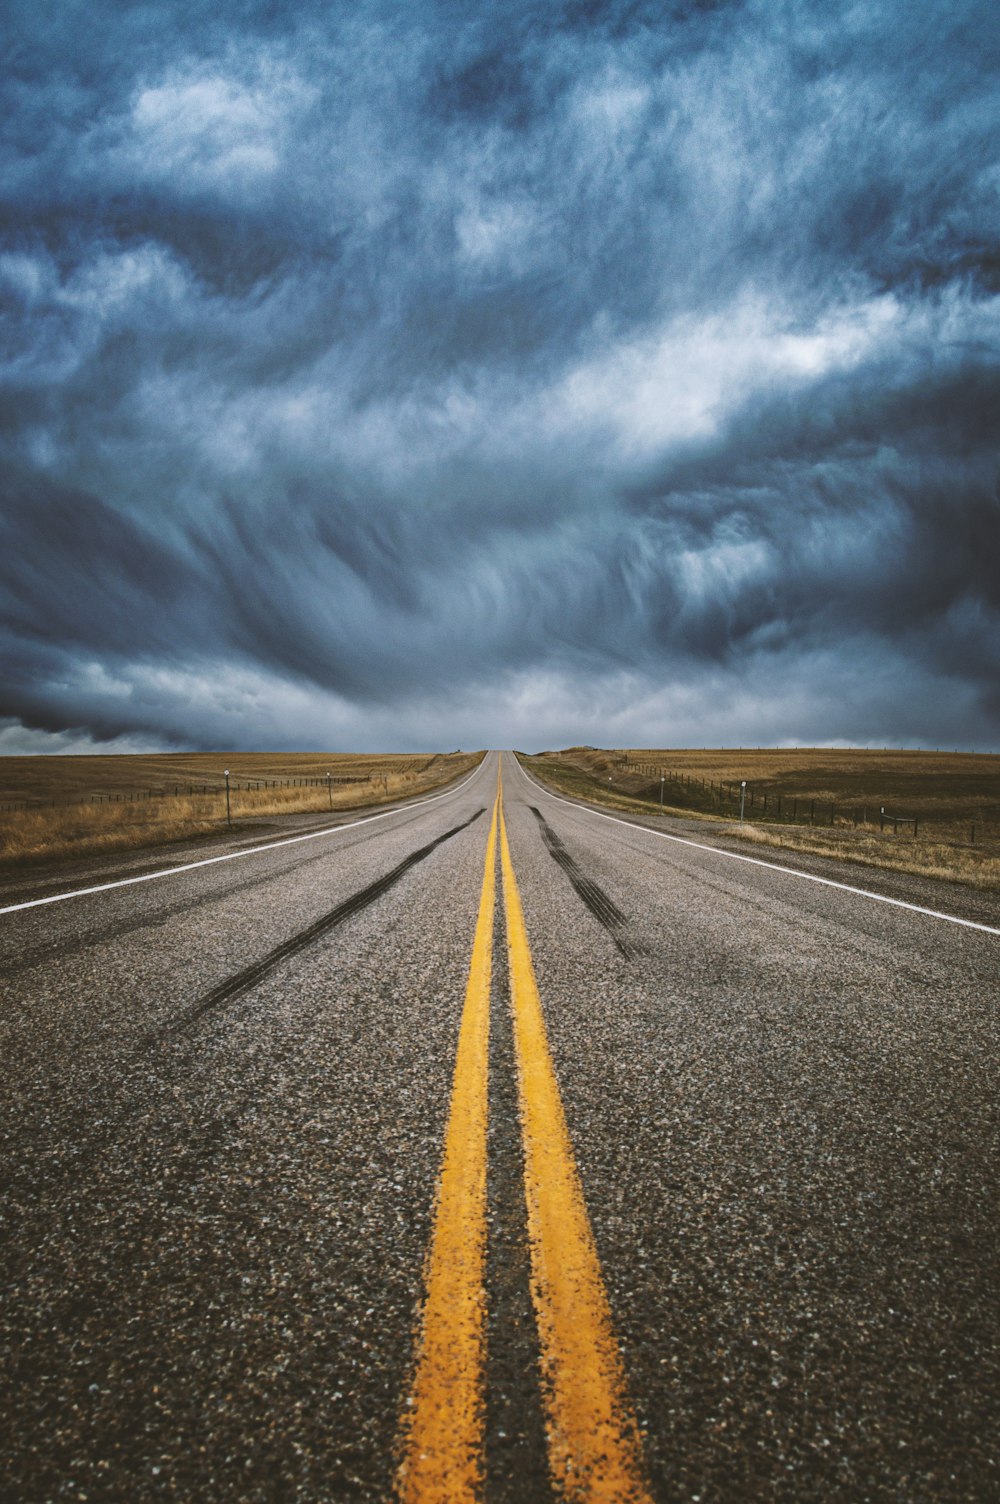 uma longa estrada reta se estende ao longe sob um céu nublado